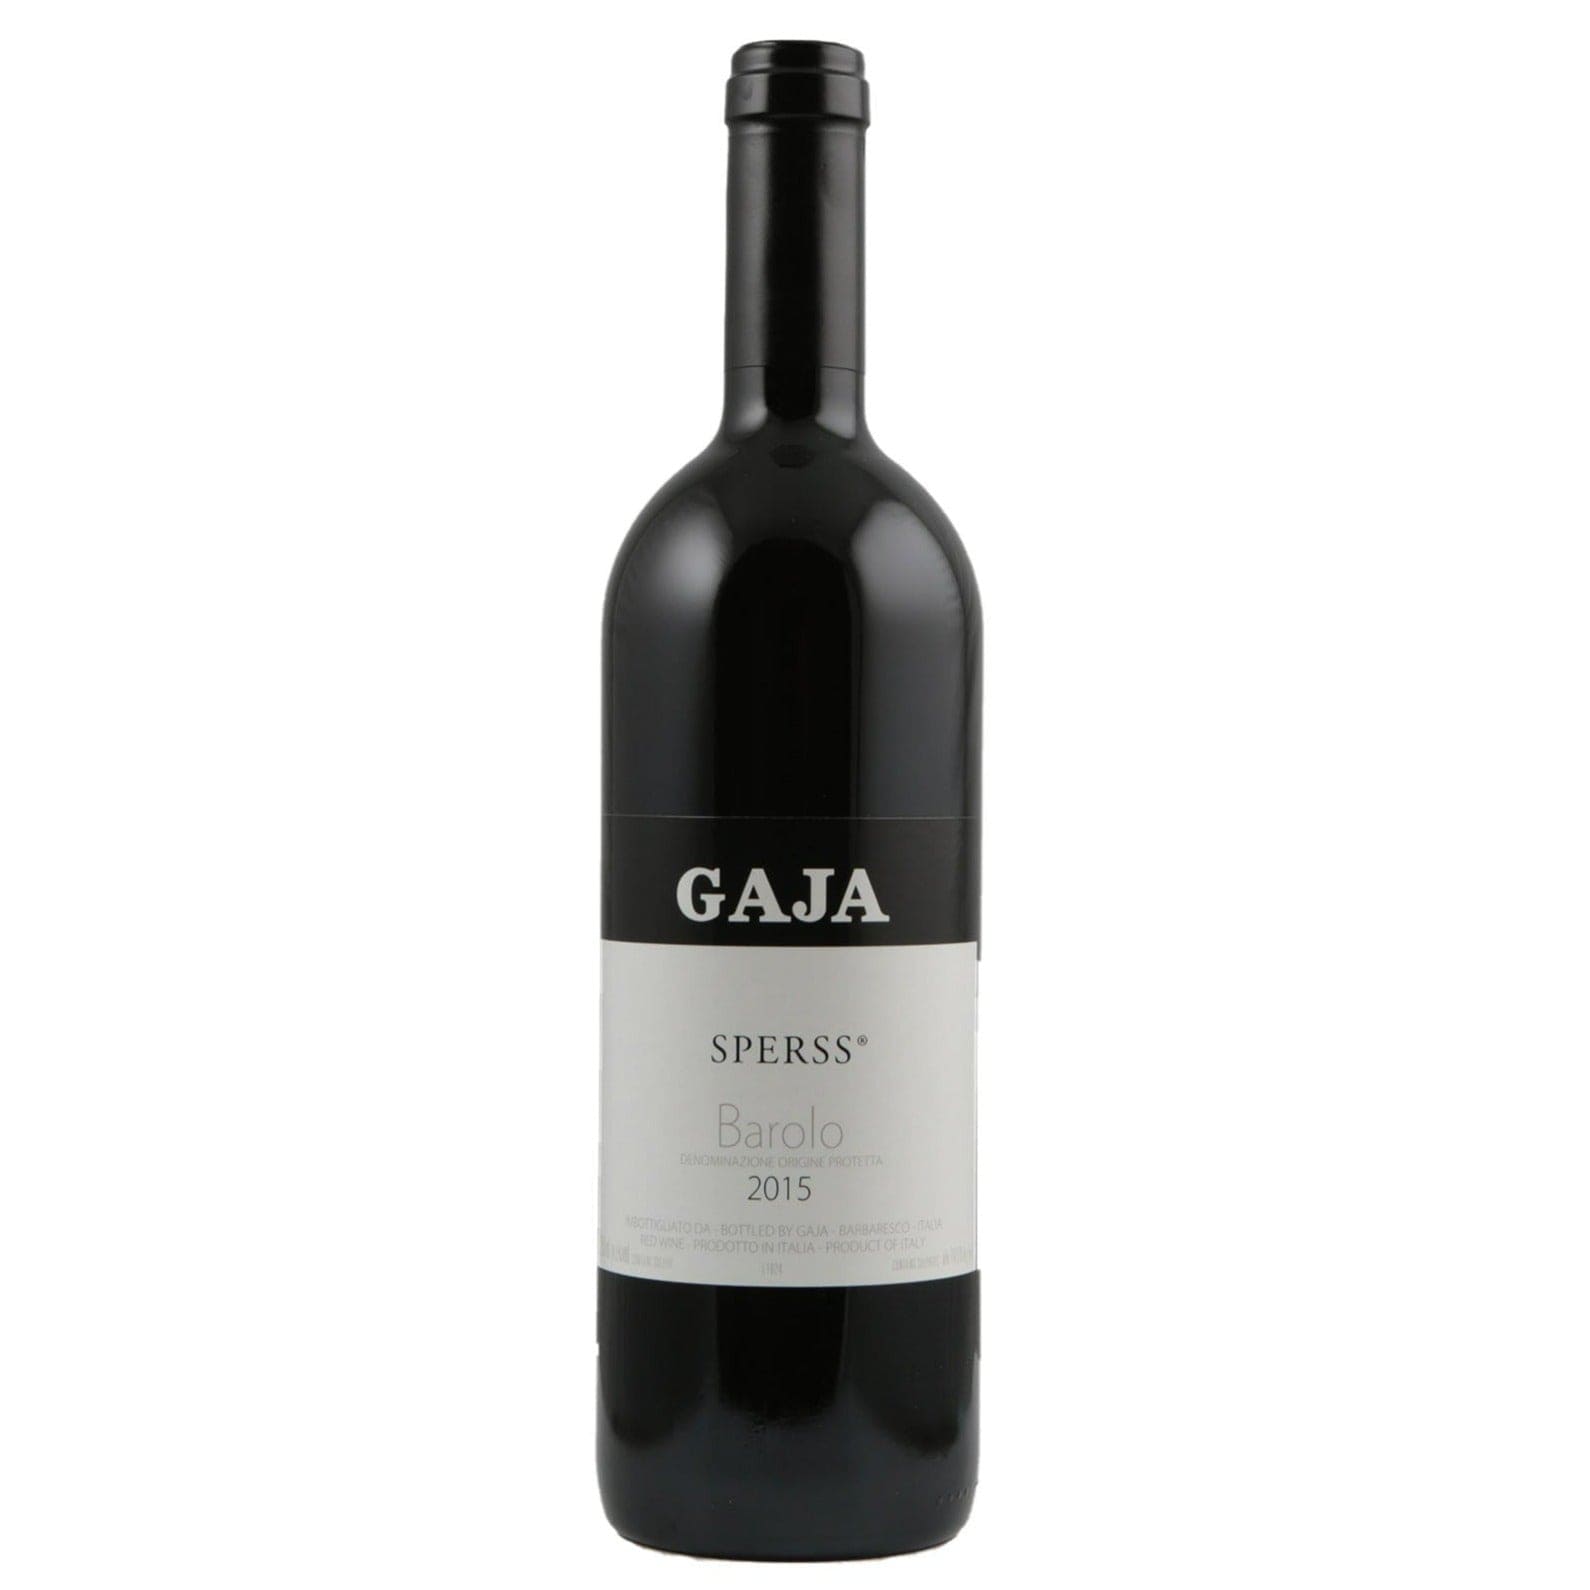 Single bottle of Red wine Gaja, Sperss, Barolo, 2015 100% Nebbiolo